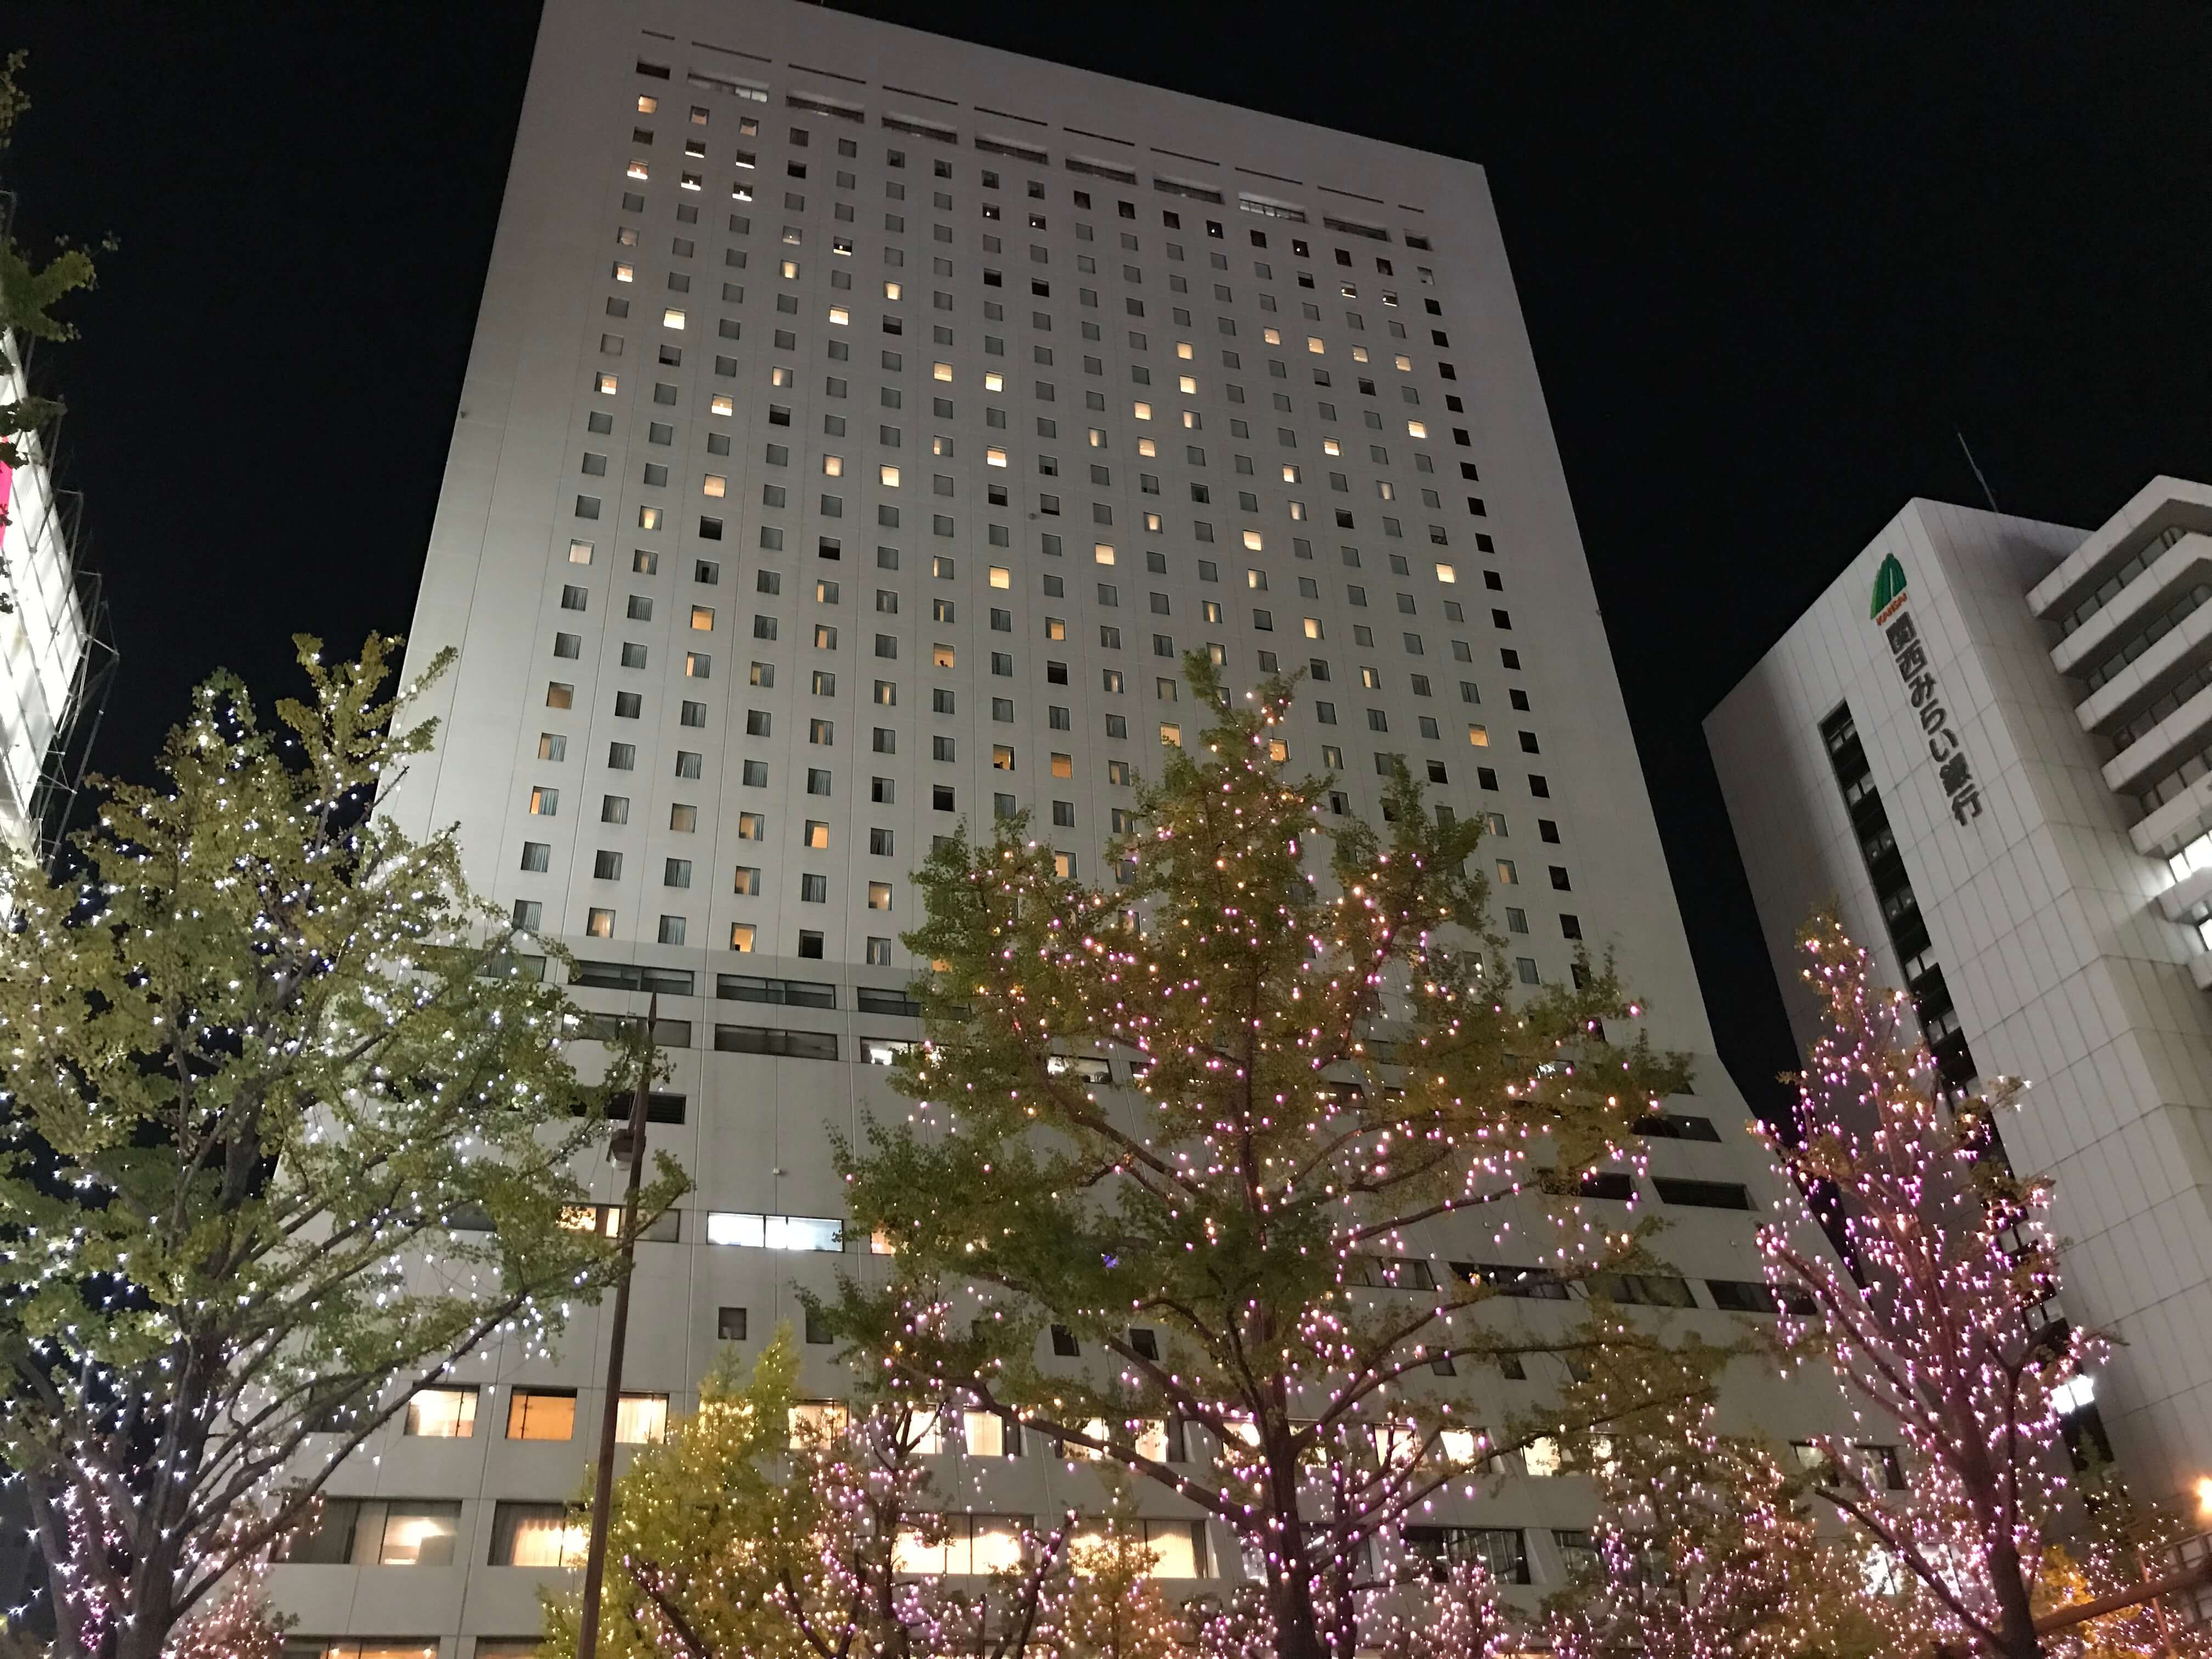 ホテル日航大阪 セリーナ ディナービュッフェ 2019年11月訪問